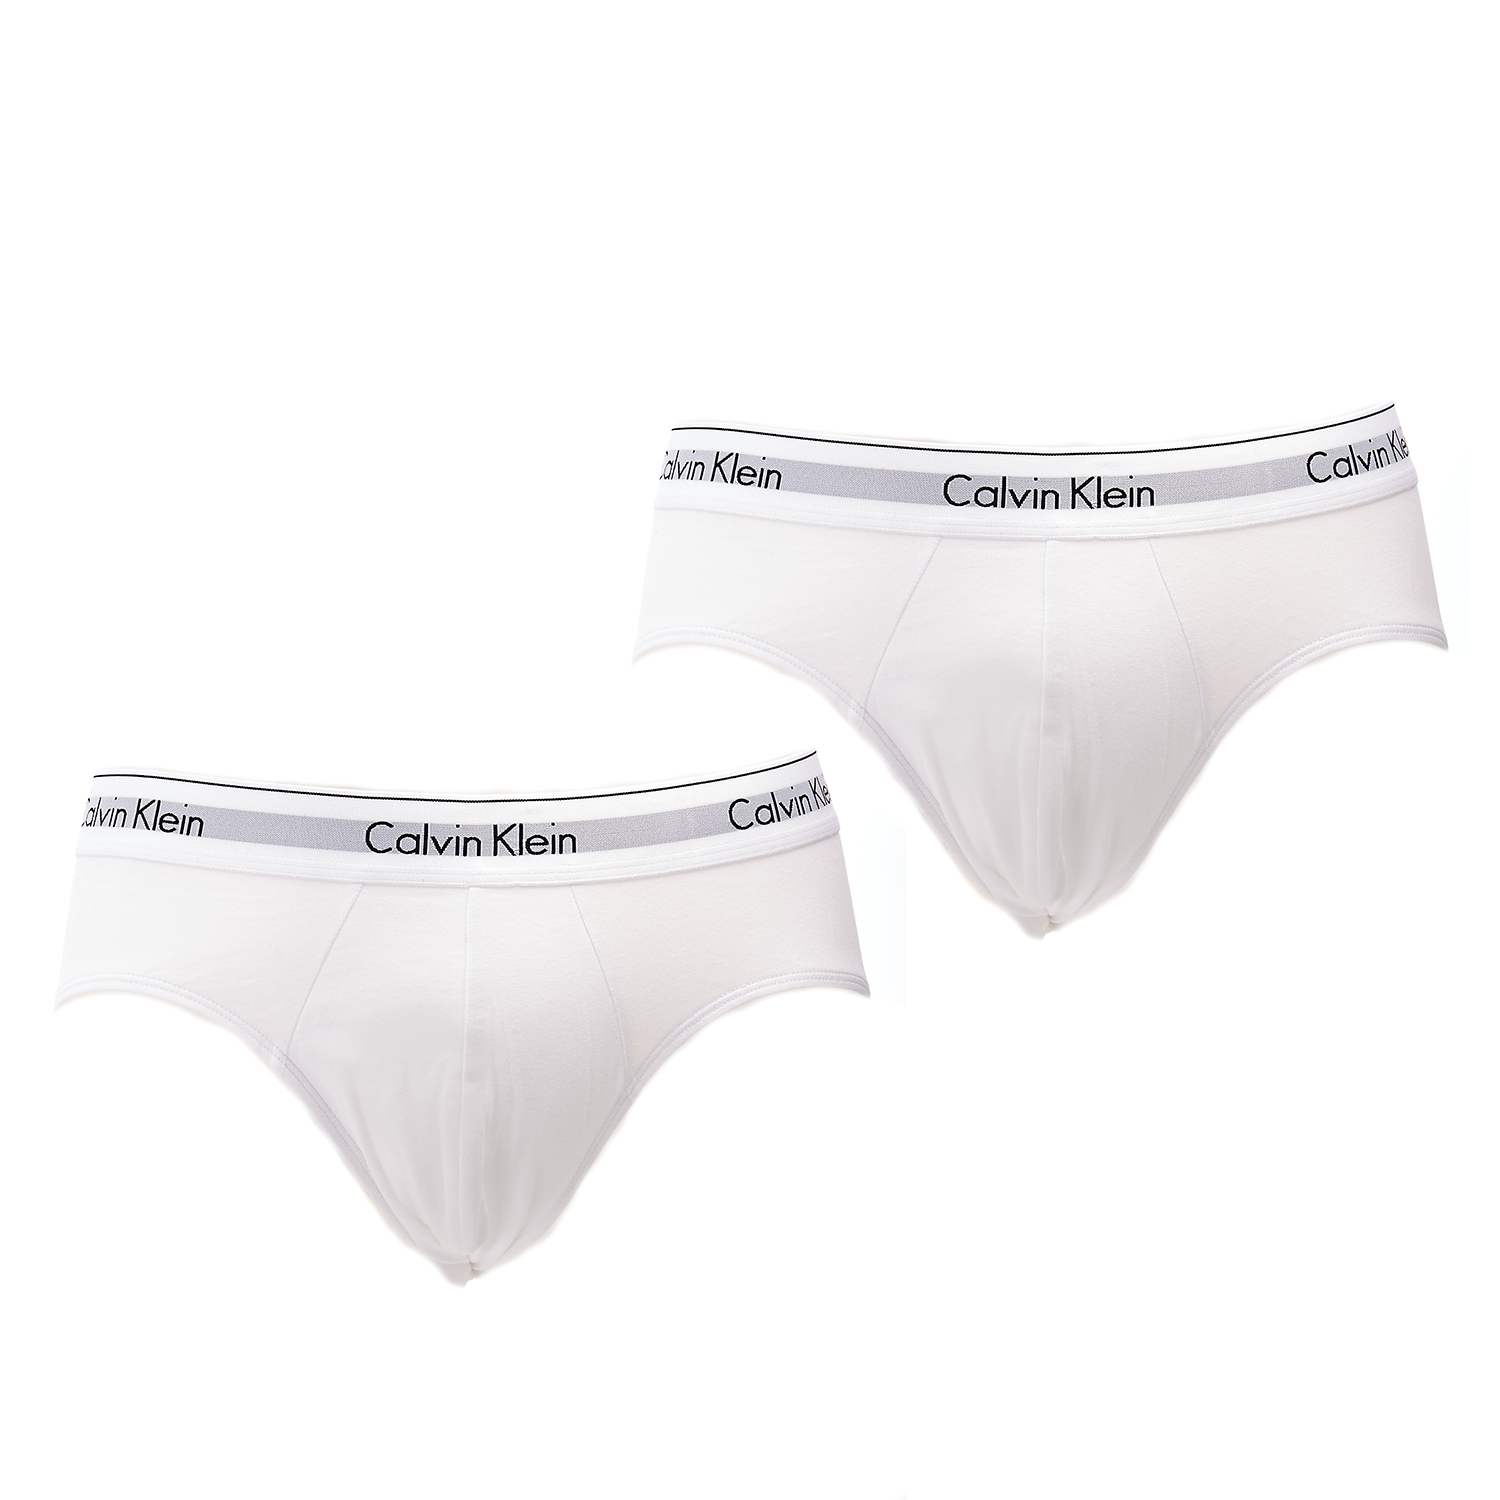 Ανδρικά/Ρούχα/Εσώρουχα/Σλίπ CK UNDERWEAR - Σετ σλιπ Calvin Klein λευκά